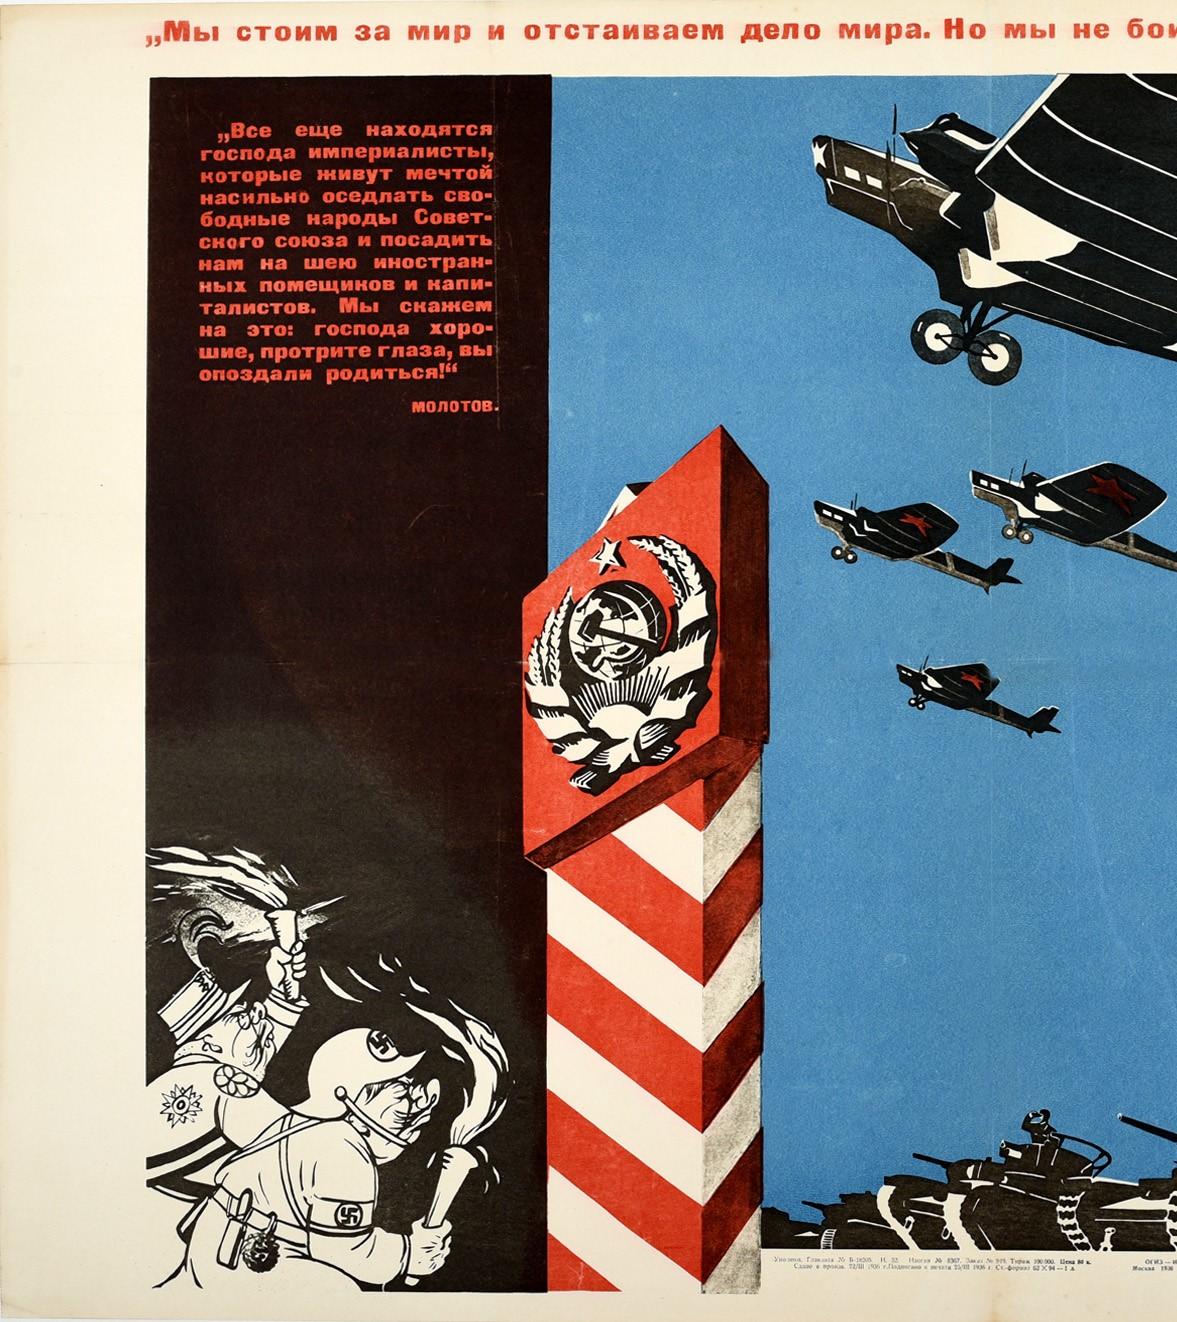 Affiche de propagande soviétique d'époque - Nous sommes pour la paix - représentant un escadron d'avions militaires avec des étoiles rouges sur les ailes volant dans le ciel bleu au-dessus d'une ligne de chars pointant vers des caricatures nazies